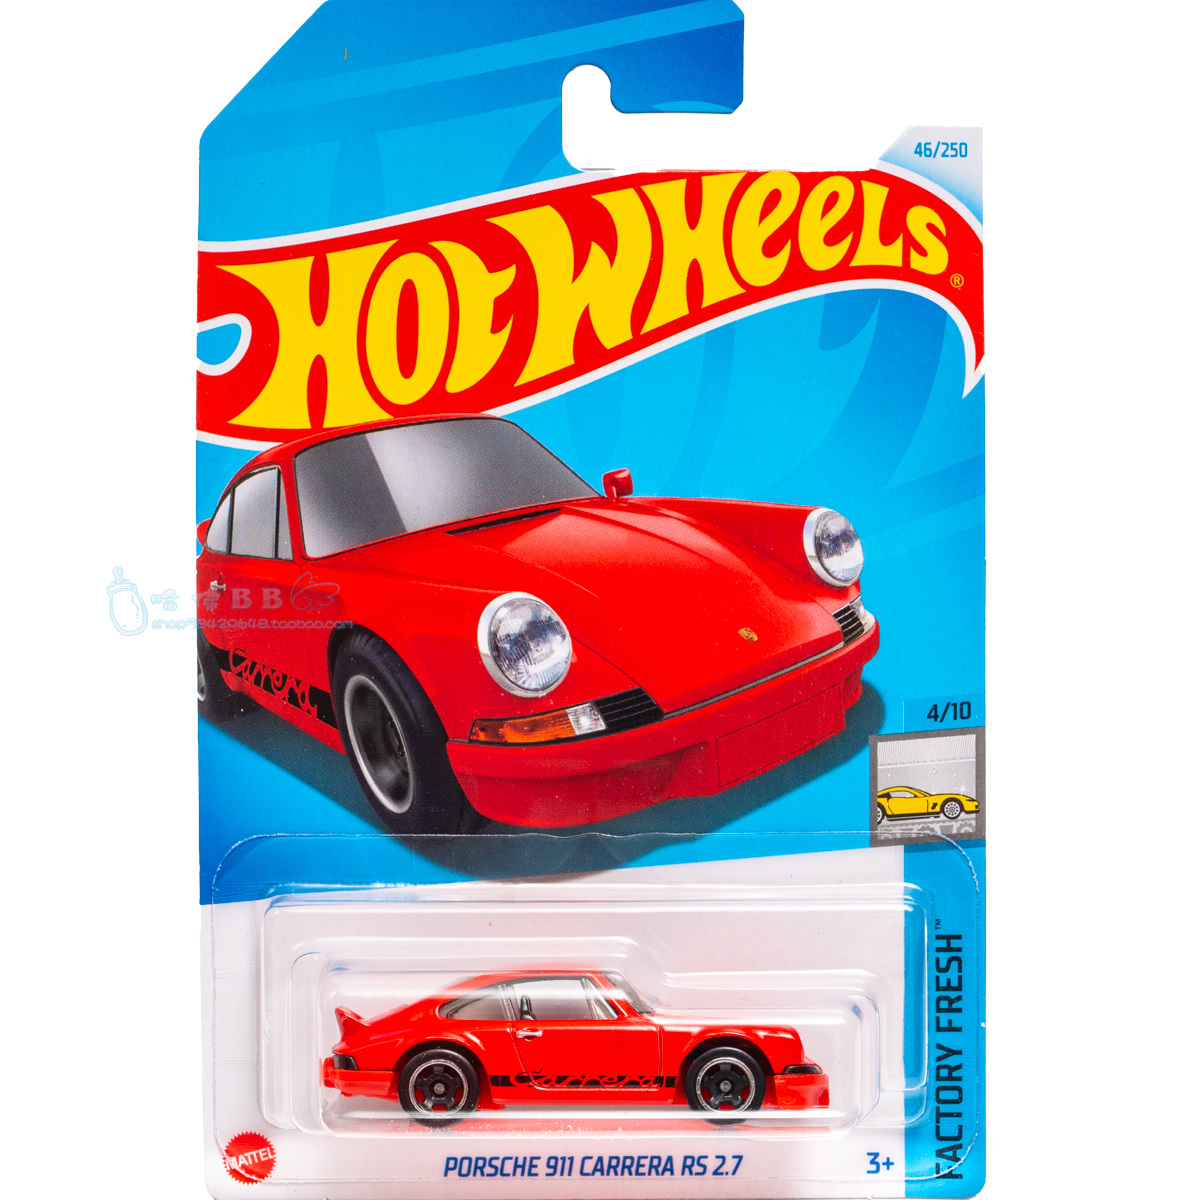 风火轮小跑车玩具模型46号 PORSCHE 911 CARRERA 2.7 保时捷 红色